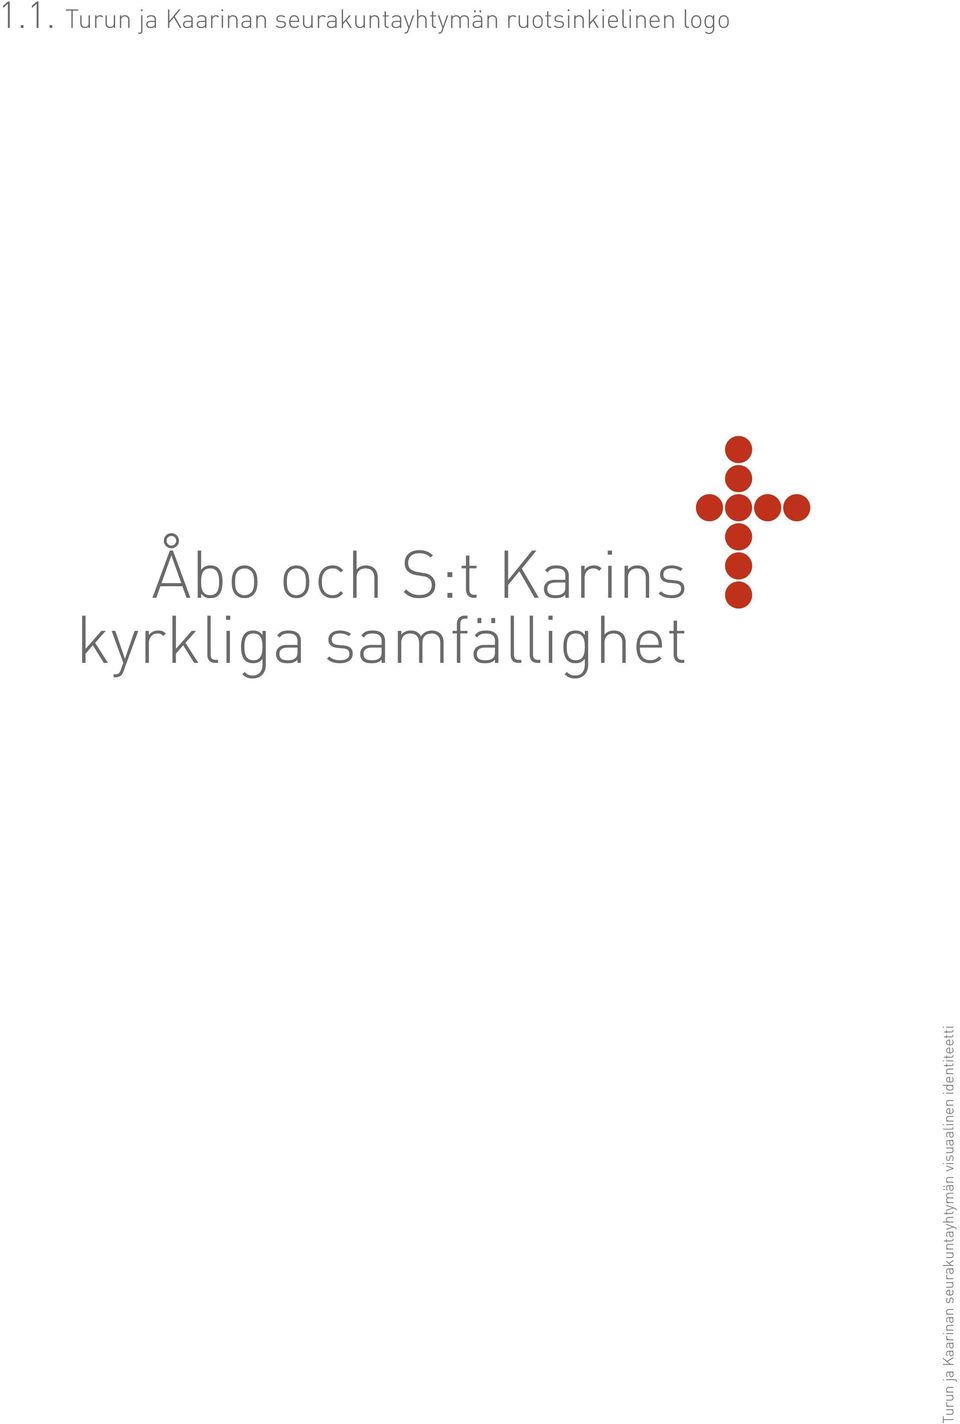 ruotsinkielinen logo